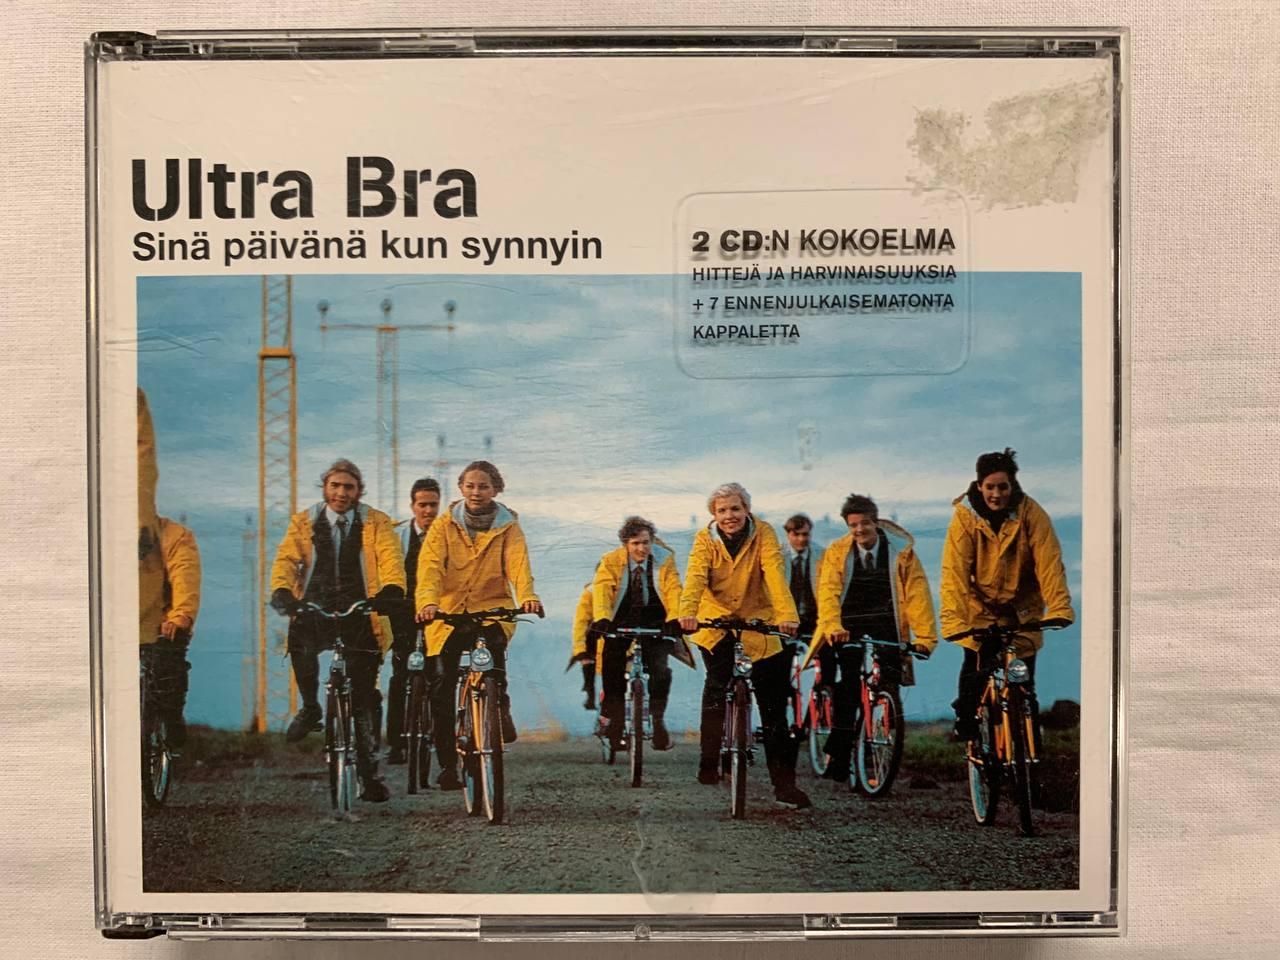 Ultra Bra - sinä päivänä kun synnyin (2cd kokoelma boxi)